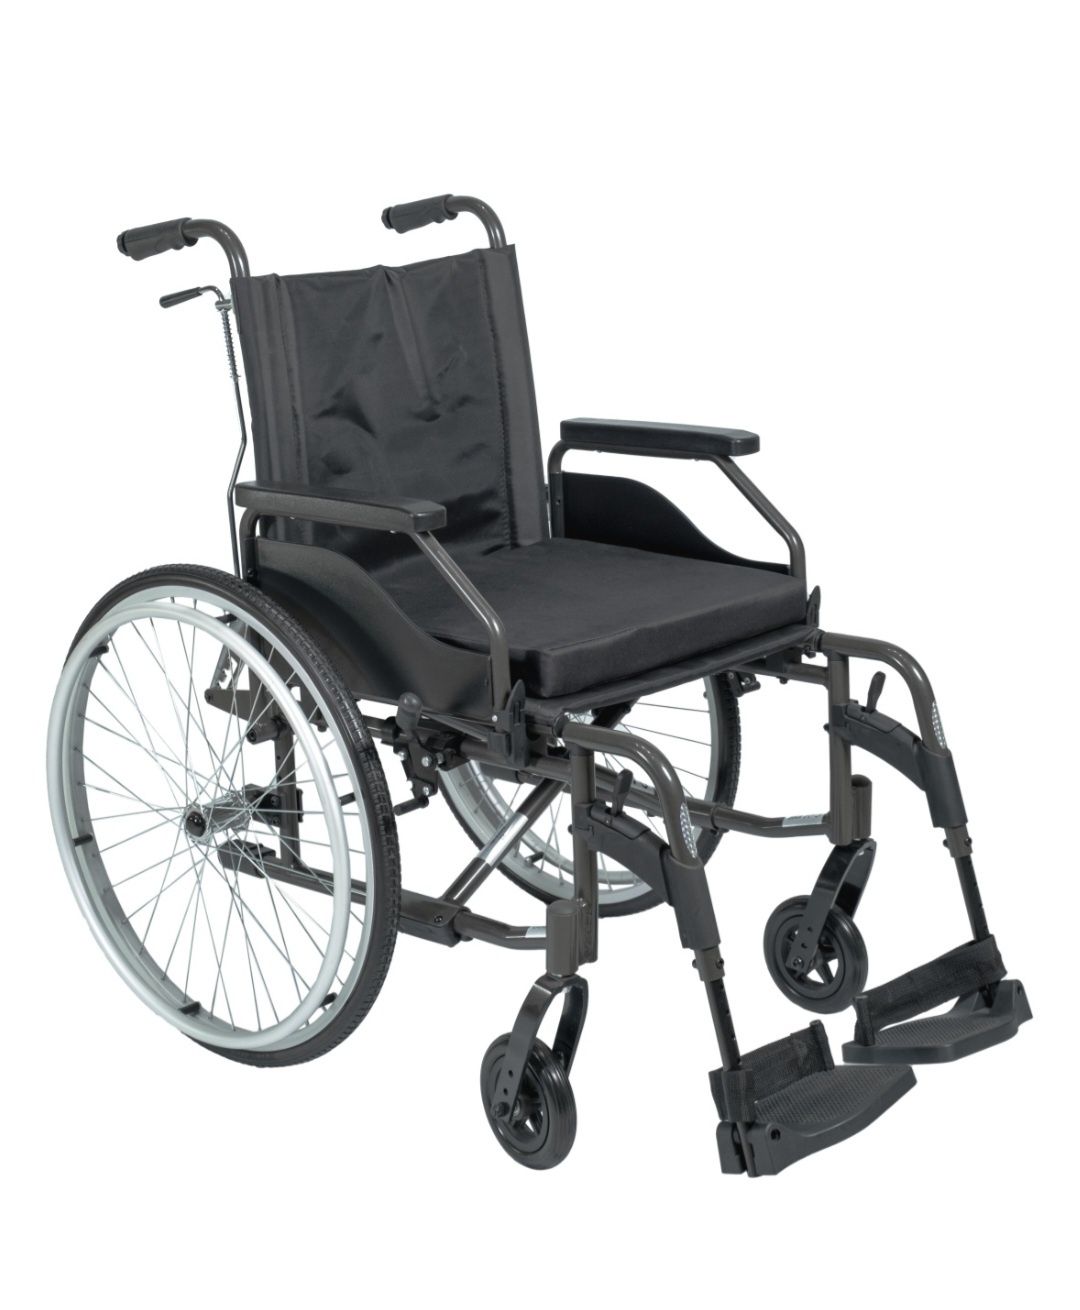 голд 400
кресло-коляска, механический
Тип